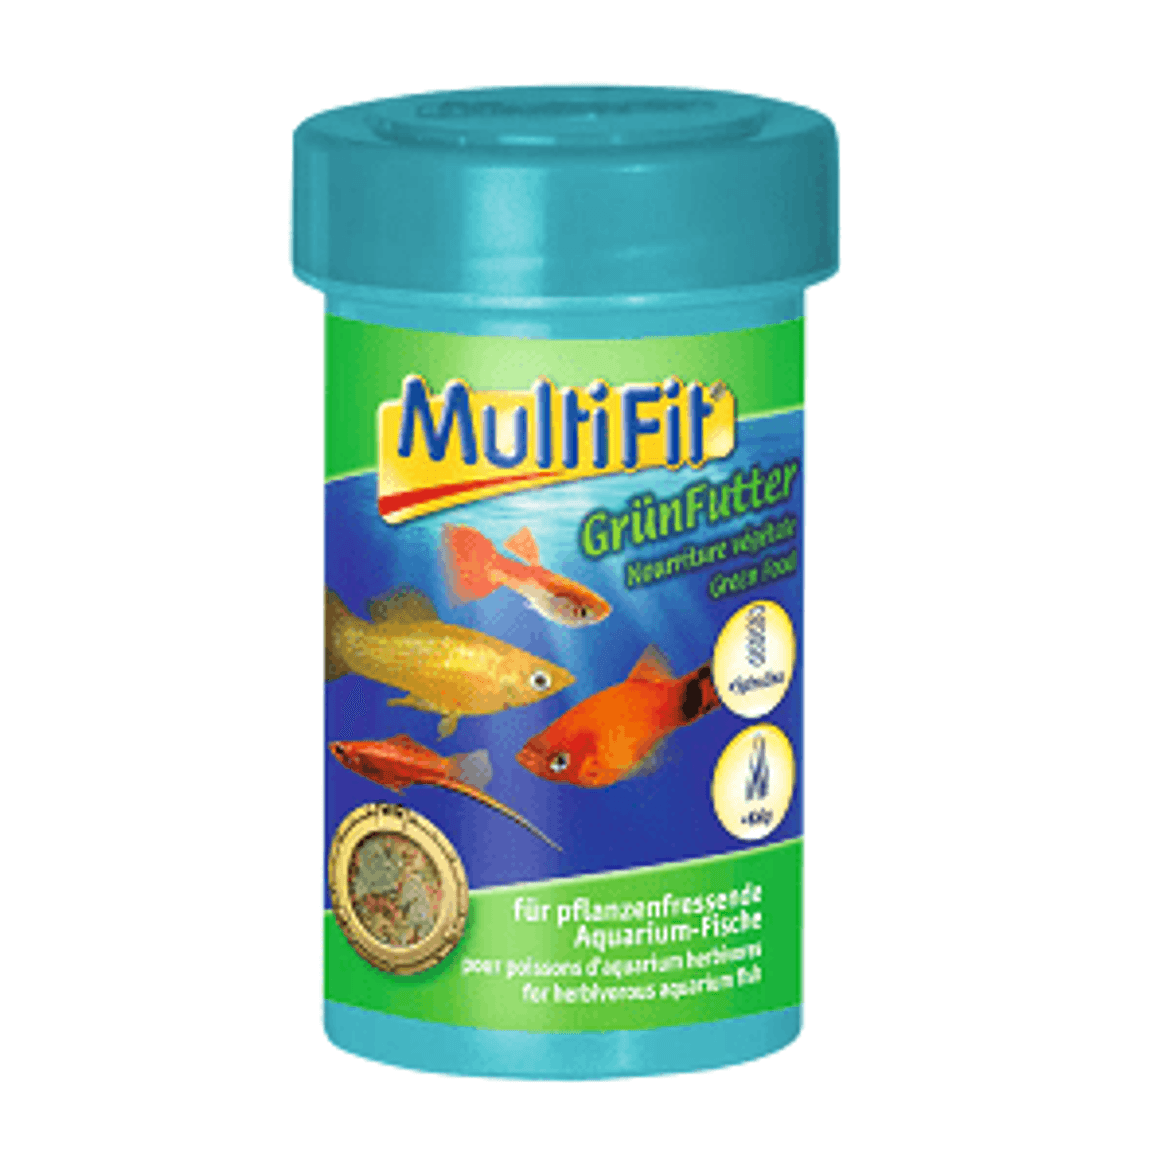 MultiFit haleledel lemezes zöldséges